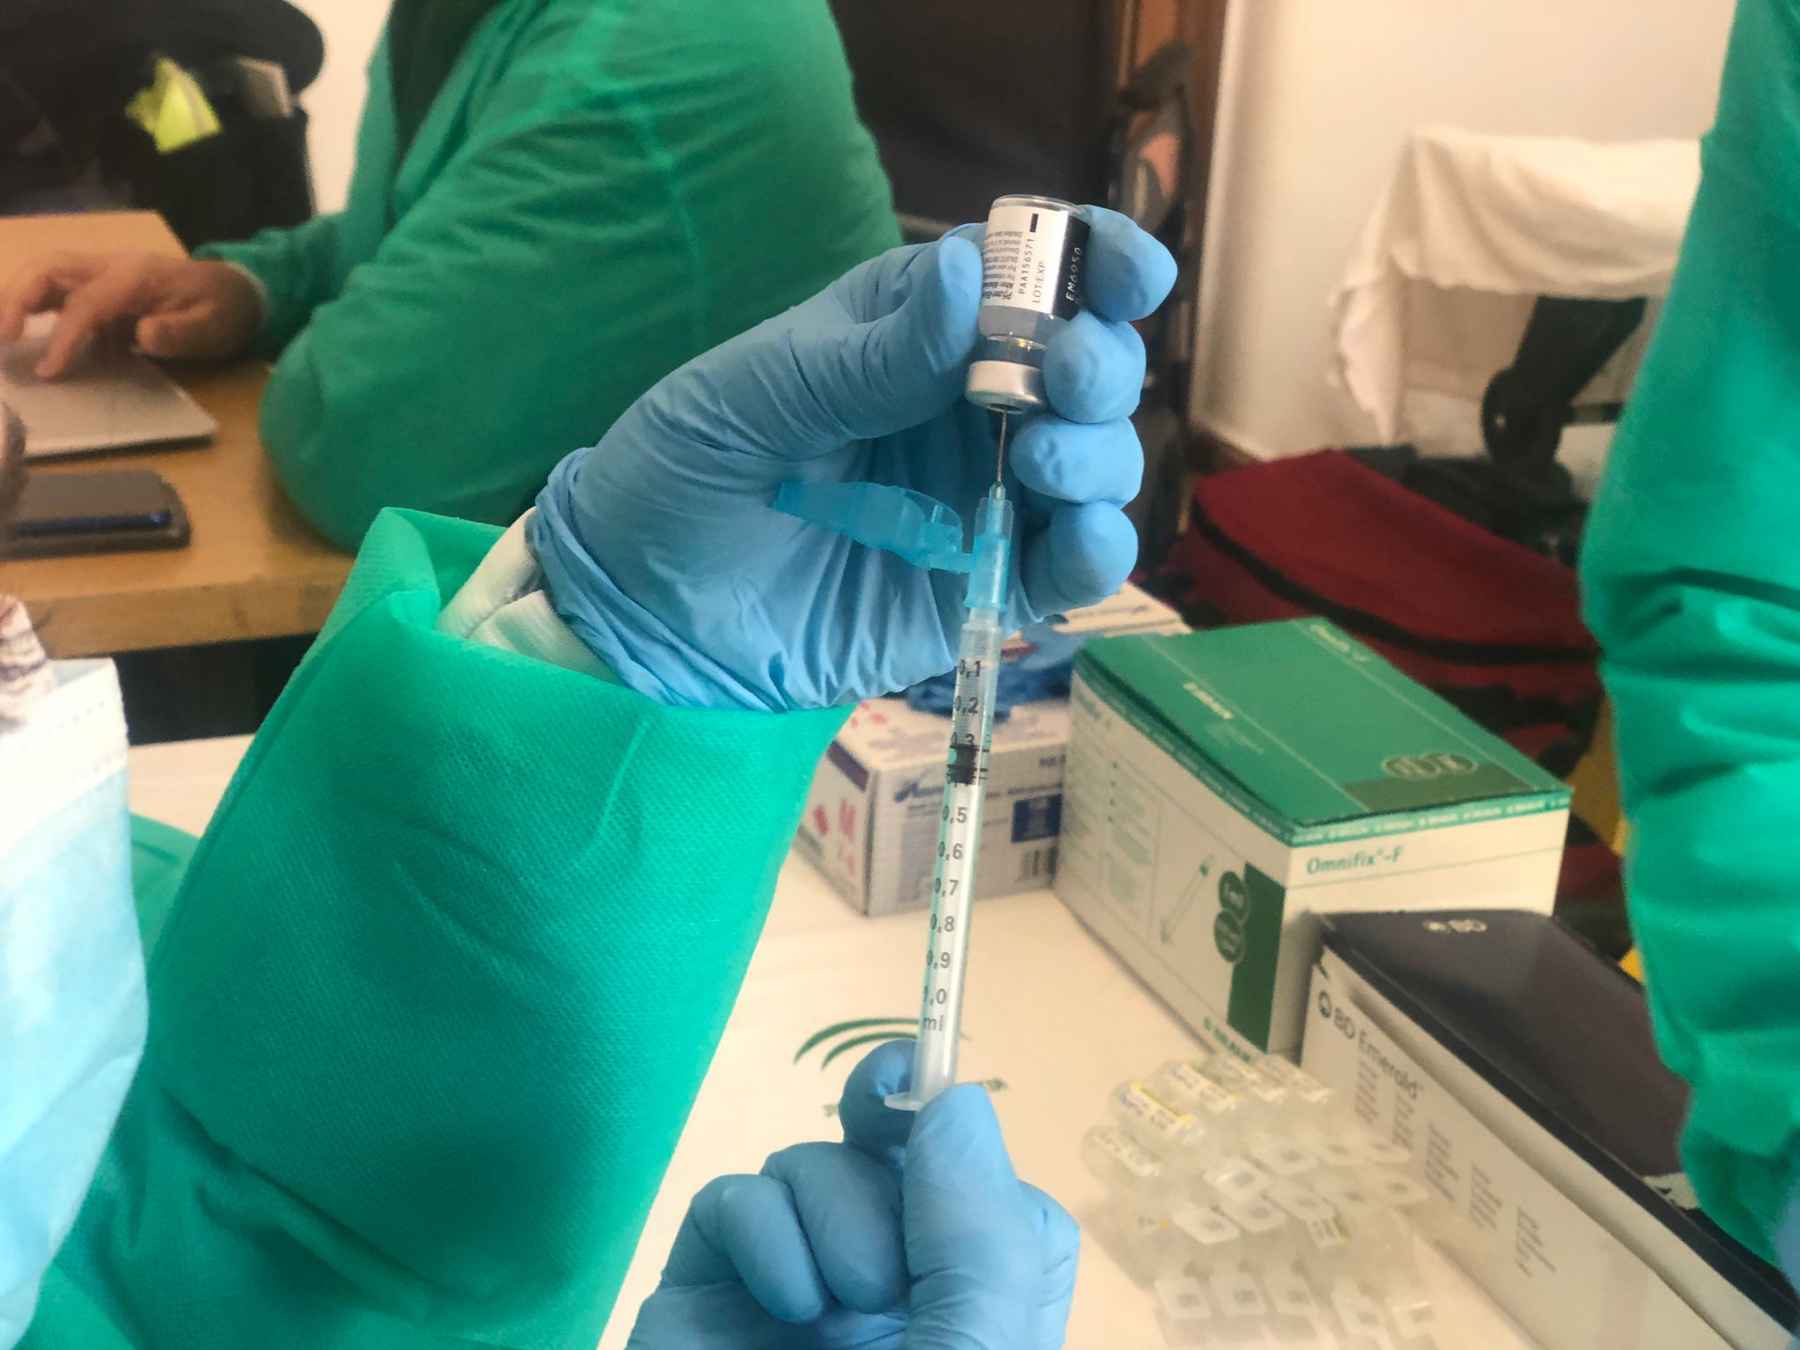 Preparación de una vacuna para ser inyectada.